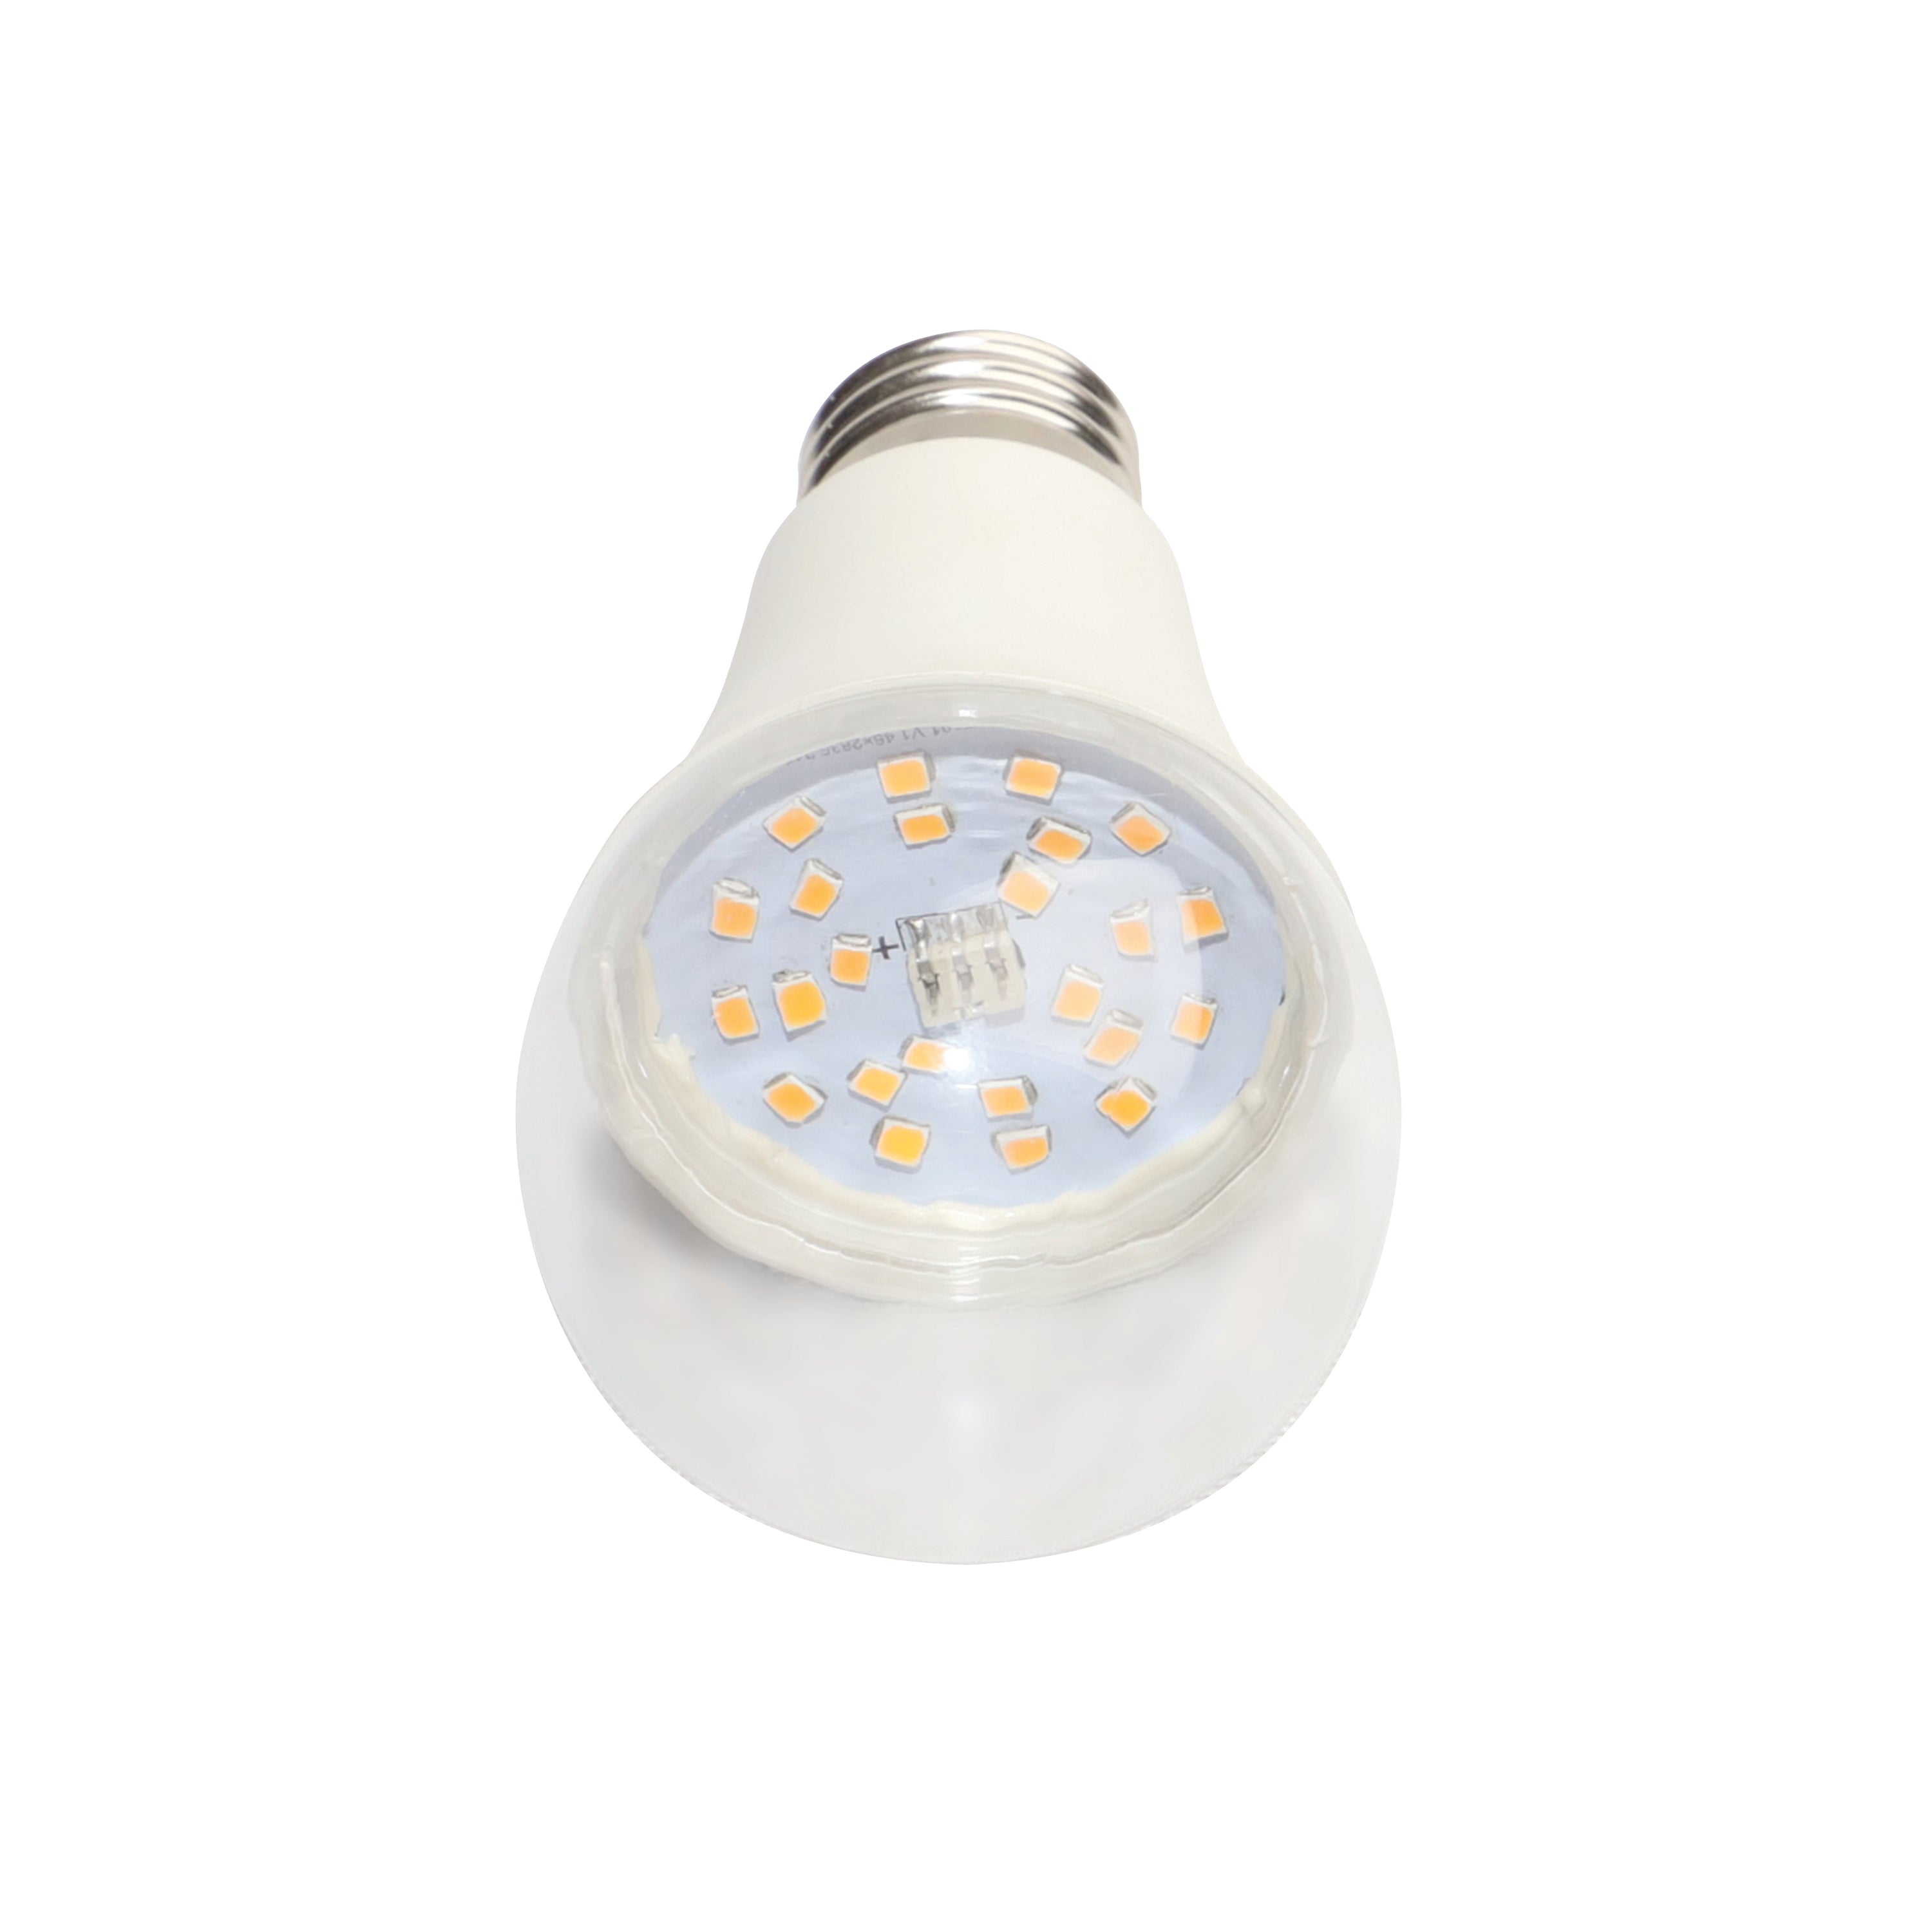 13.09 PPF 9-Watt LED Grow Light Bulb, Full Spectrum, E26